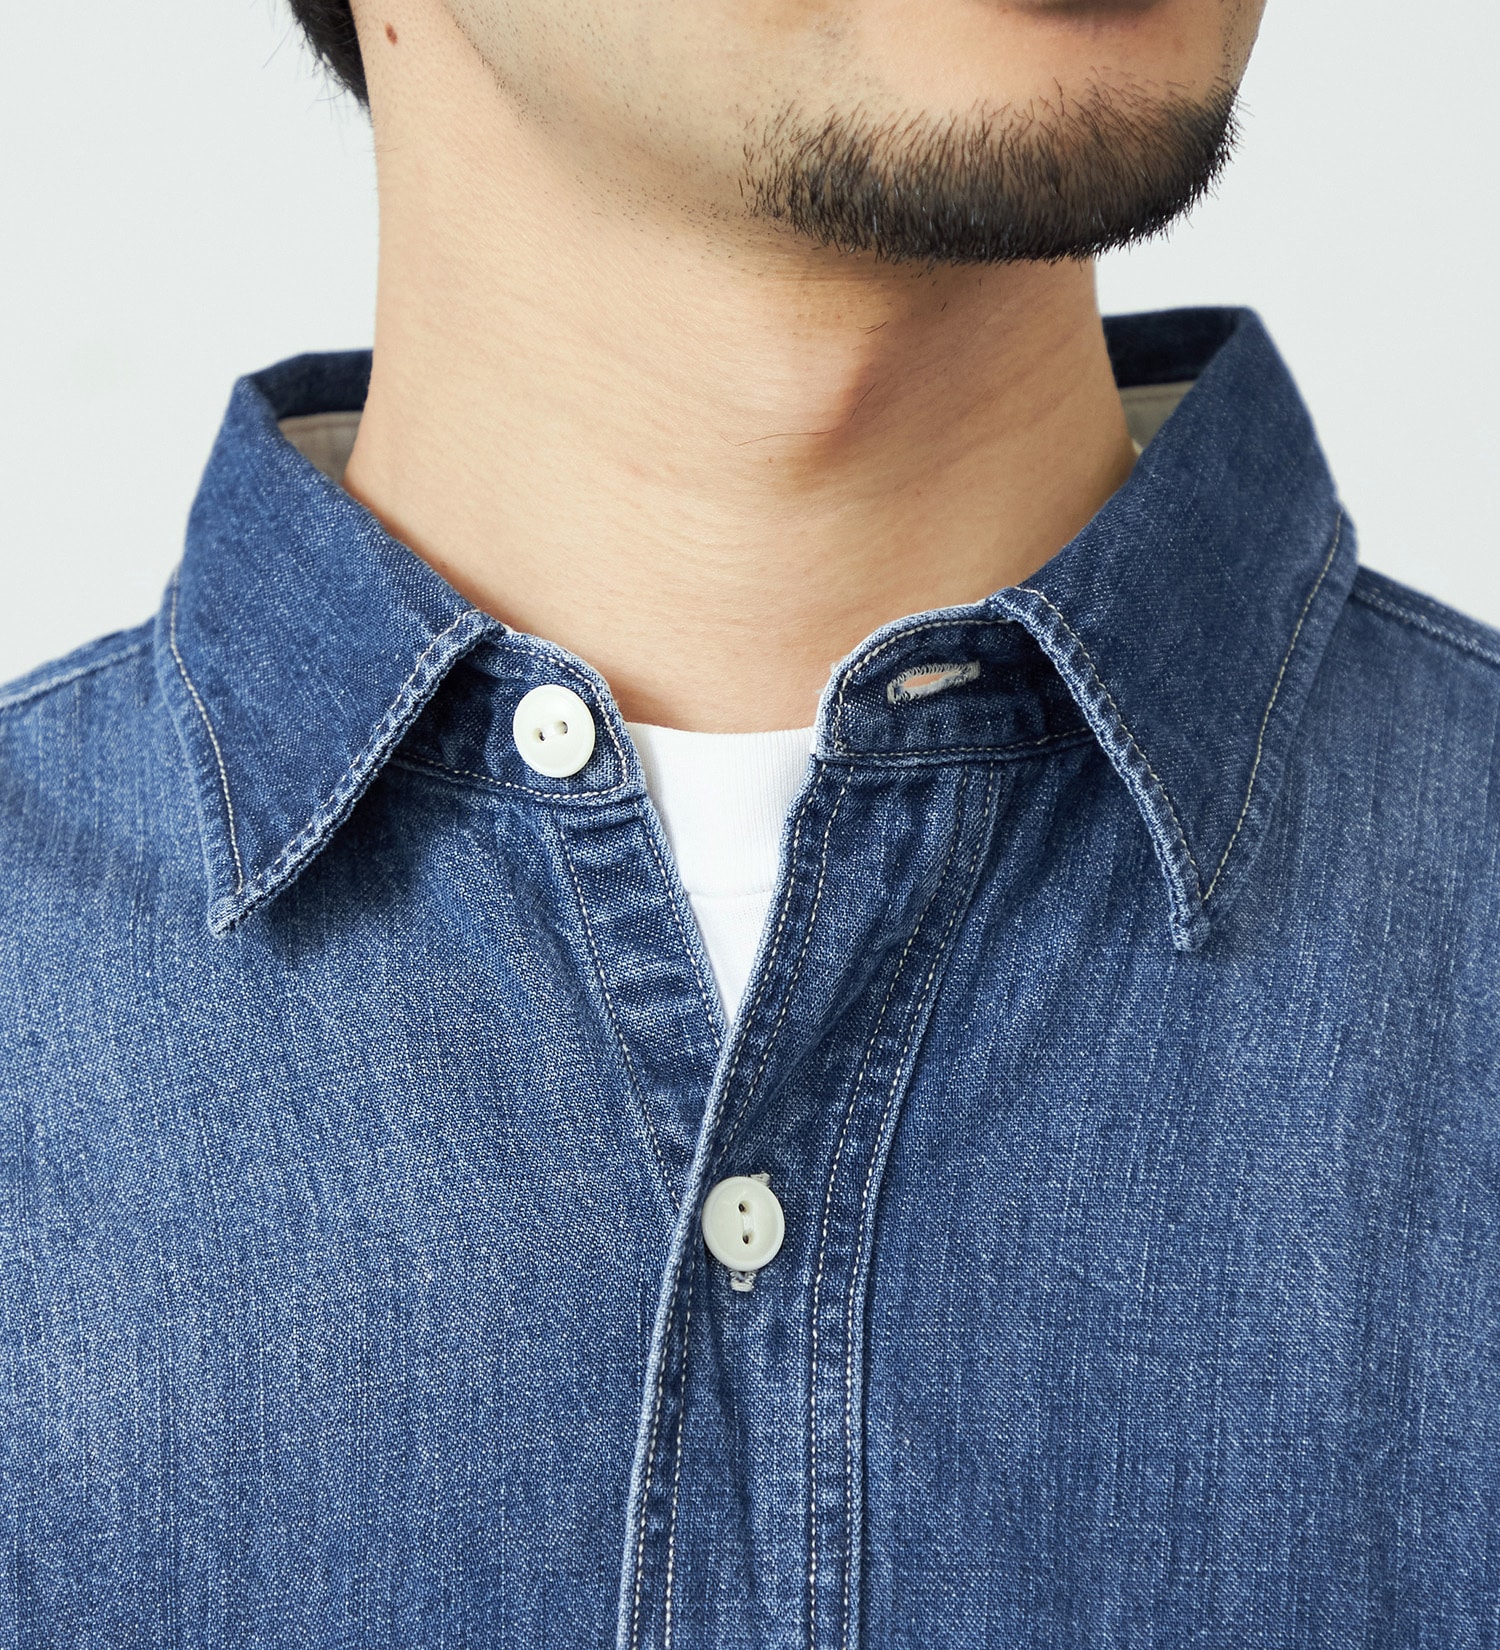 EDWIN(エドウイン)のヴィンテージワークシャツ 長袖|トップス/シャツ/ブラウス/メンズ|中色ブルー